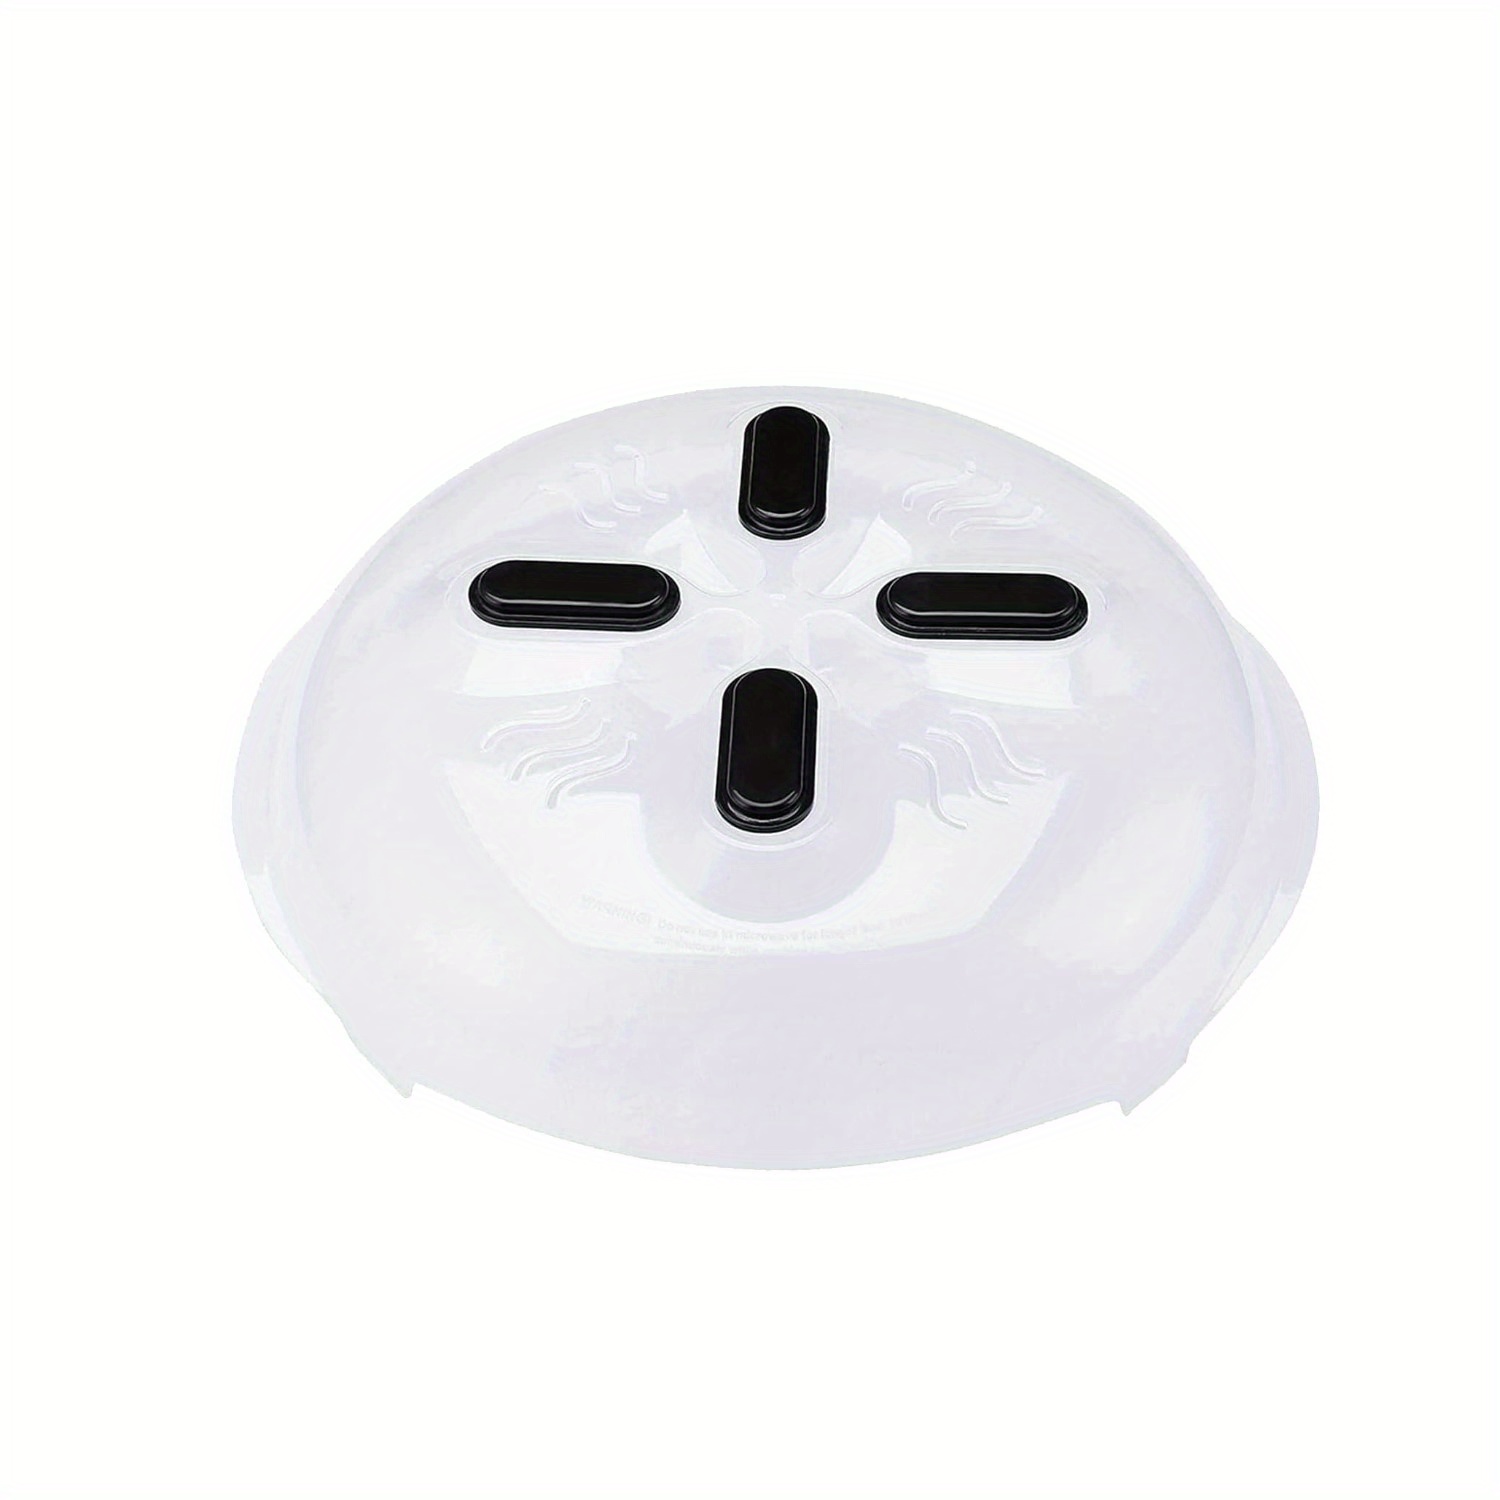 YARDWE Tapa de infusor Cubierta de placa de microondas, tapa protectora de  salpicaduras para calentar plato dentro de microondas, cubierta de